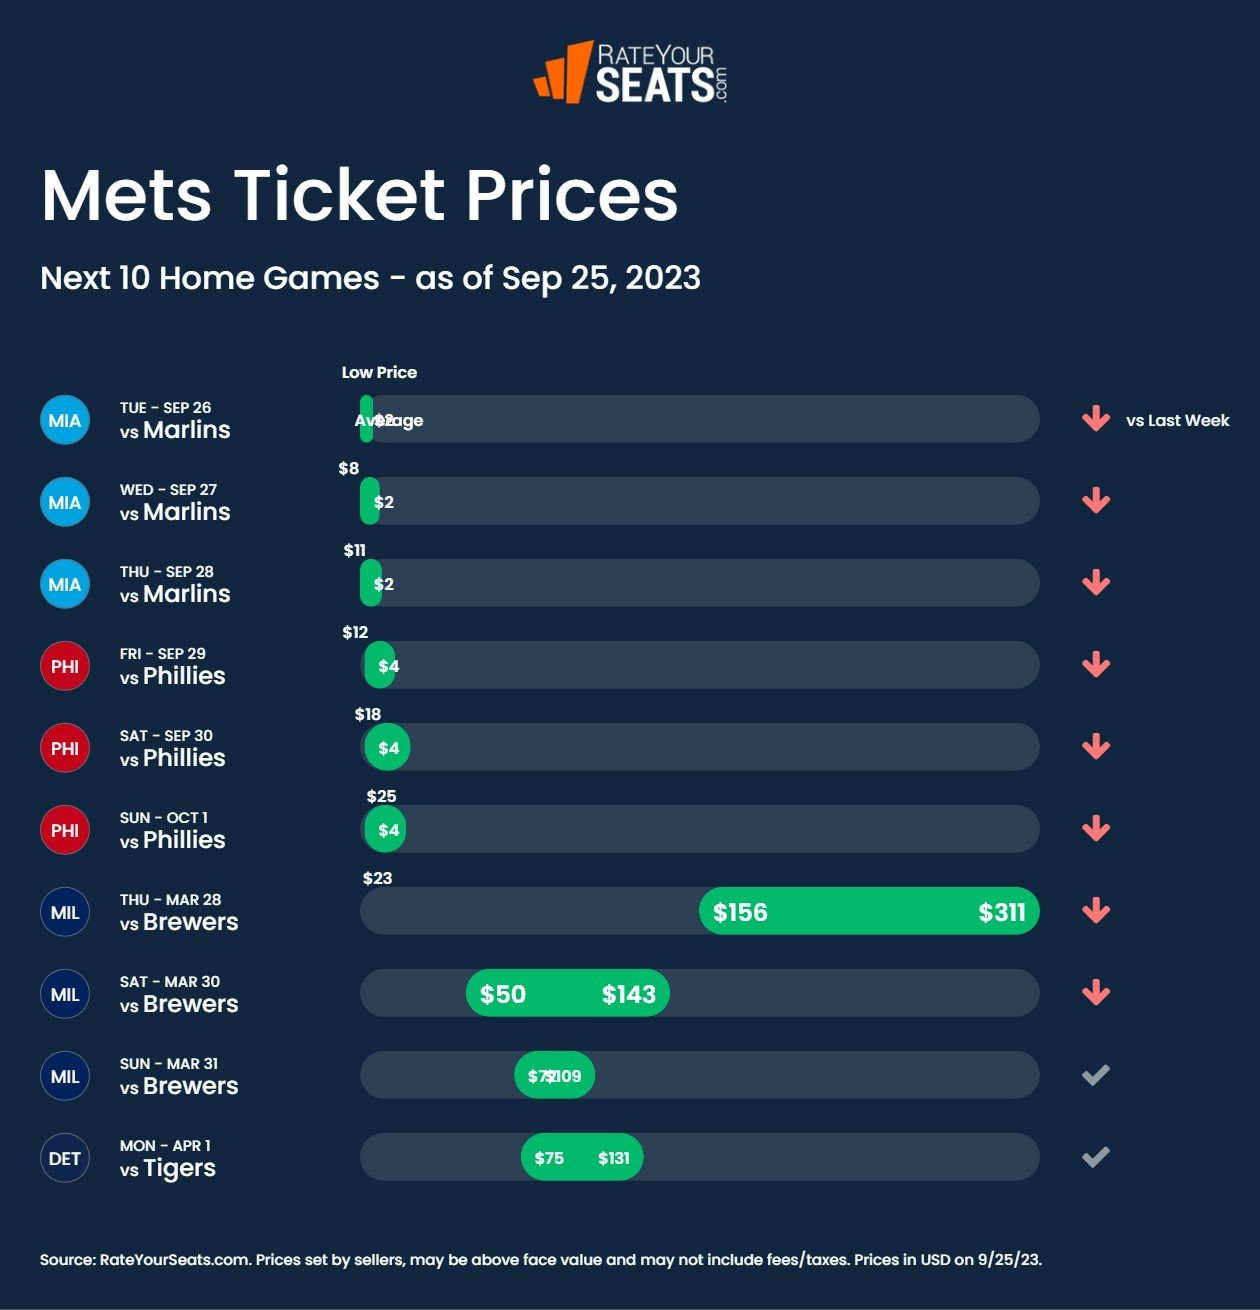 Mets tickets pricing week of September 25 2023